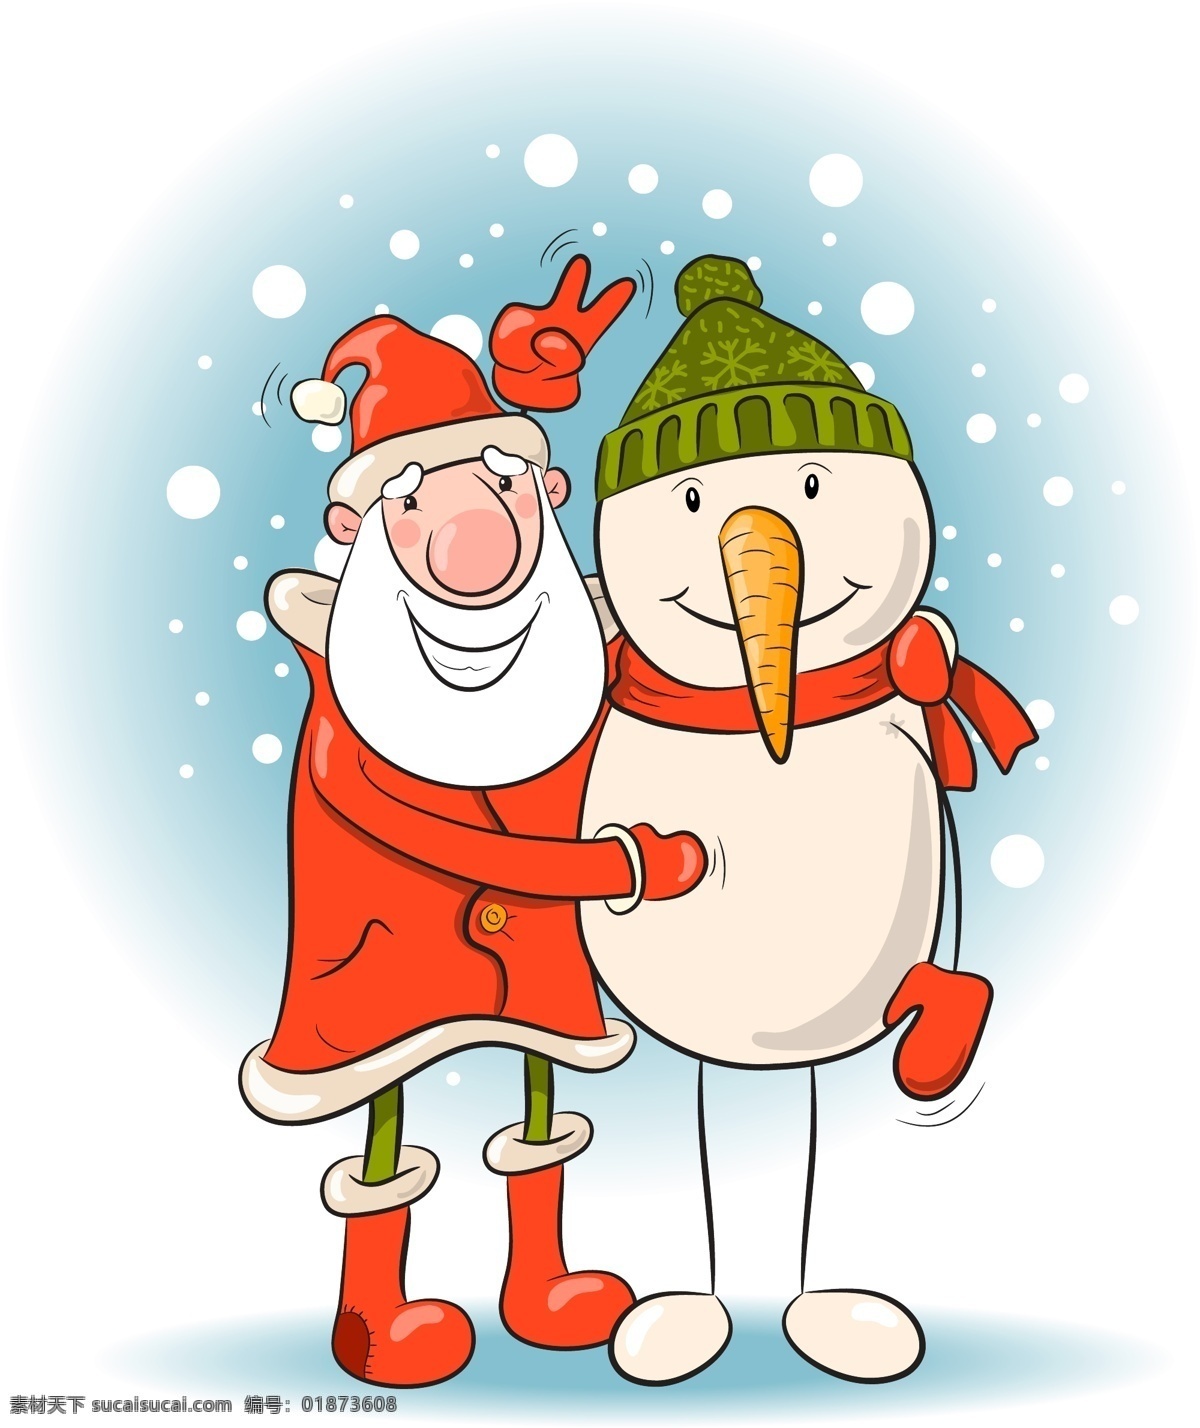 圣诞老人 雪人 圣诞节 圣诞 克劳斯 卡通圣诞 庆祝 雪花 文化艺术 节日庆祝